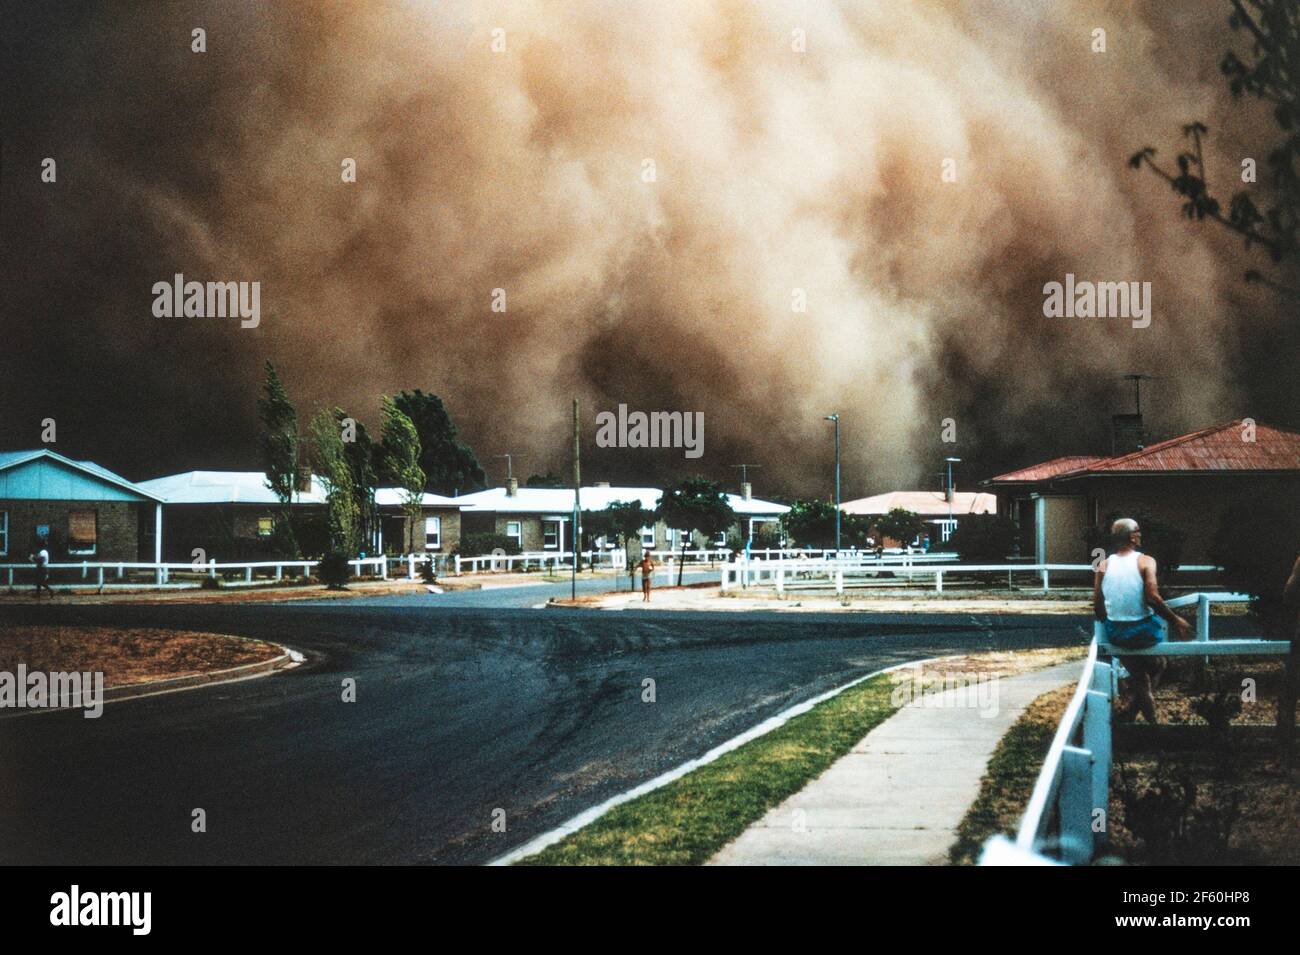 1968 - Elizabeth, Adélaïde, Australie méridionale. Tempête de poussière Australie . Tempête de poussière arrivant au-dessus de la ville d'Elizabeth Grove, Elizabeth, Adélaïde, Australie méridionale 18 janvier 1968. Elizabeth Grove a été fondée en 1955 comme l'une des banlieues d'Elizabeth, une banlieue au nord d'Adélaïde, en Australie méridionale. Une tempête de poussière, ou tempête de sable, est un phénomène météorologique qui se produit lorsqu'un front de rouille ou un autre vent puissant souffle du sable et de la saleté sur une surface sèche. La tempête de poussière est plus susceptible d'être utilisée lorsque des particules plus fines sont soufflées sur de longues distances, en particulier lorsque la tempête de poussière affecte les zones urbaines. Banque D'Images